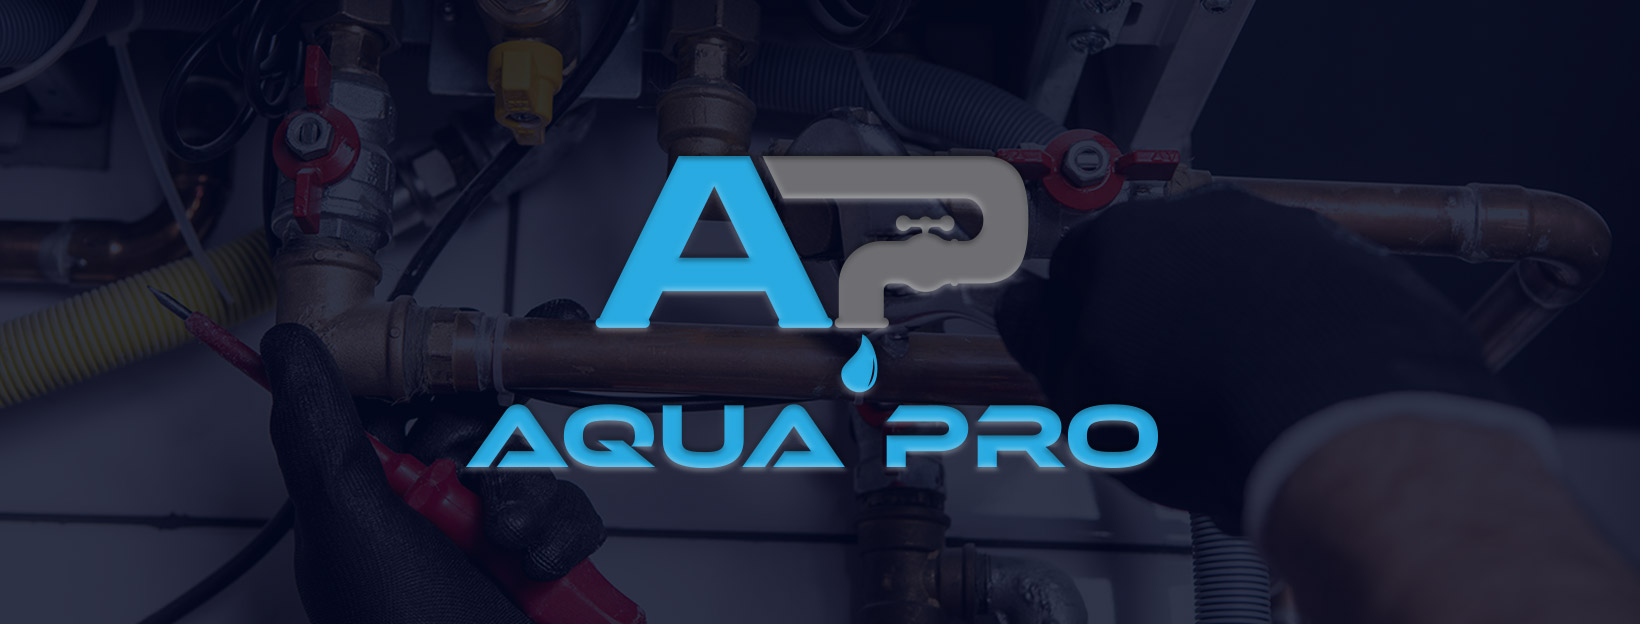 Aqua Pro Sewer Repair Plumbing